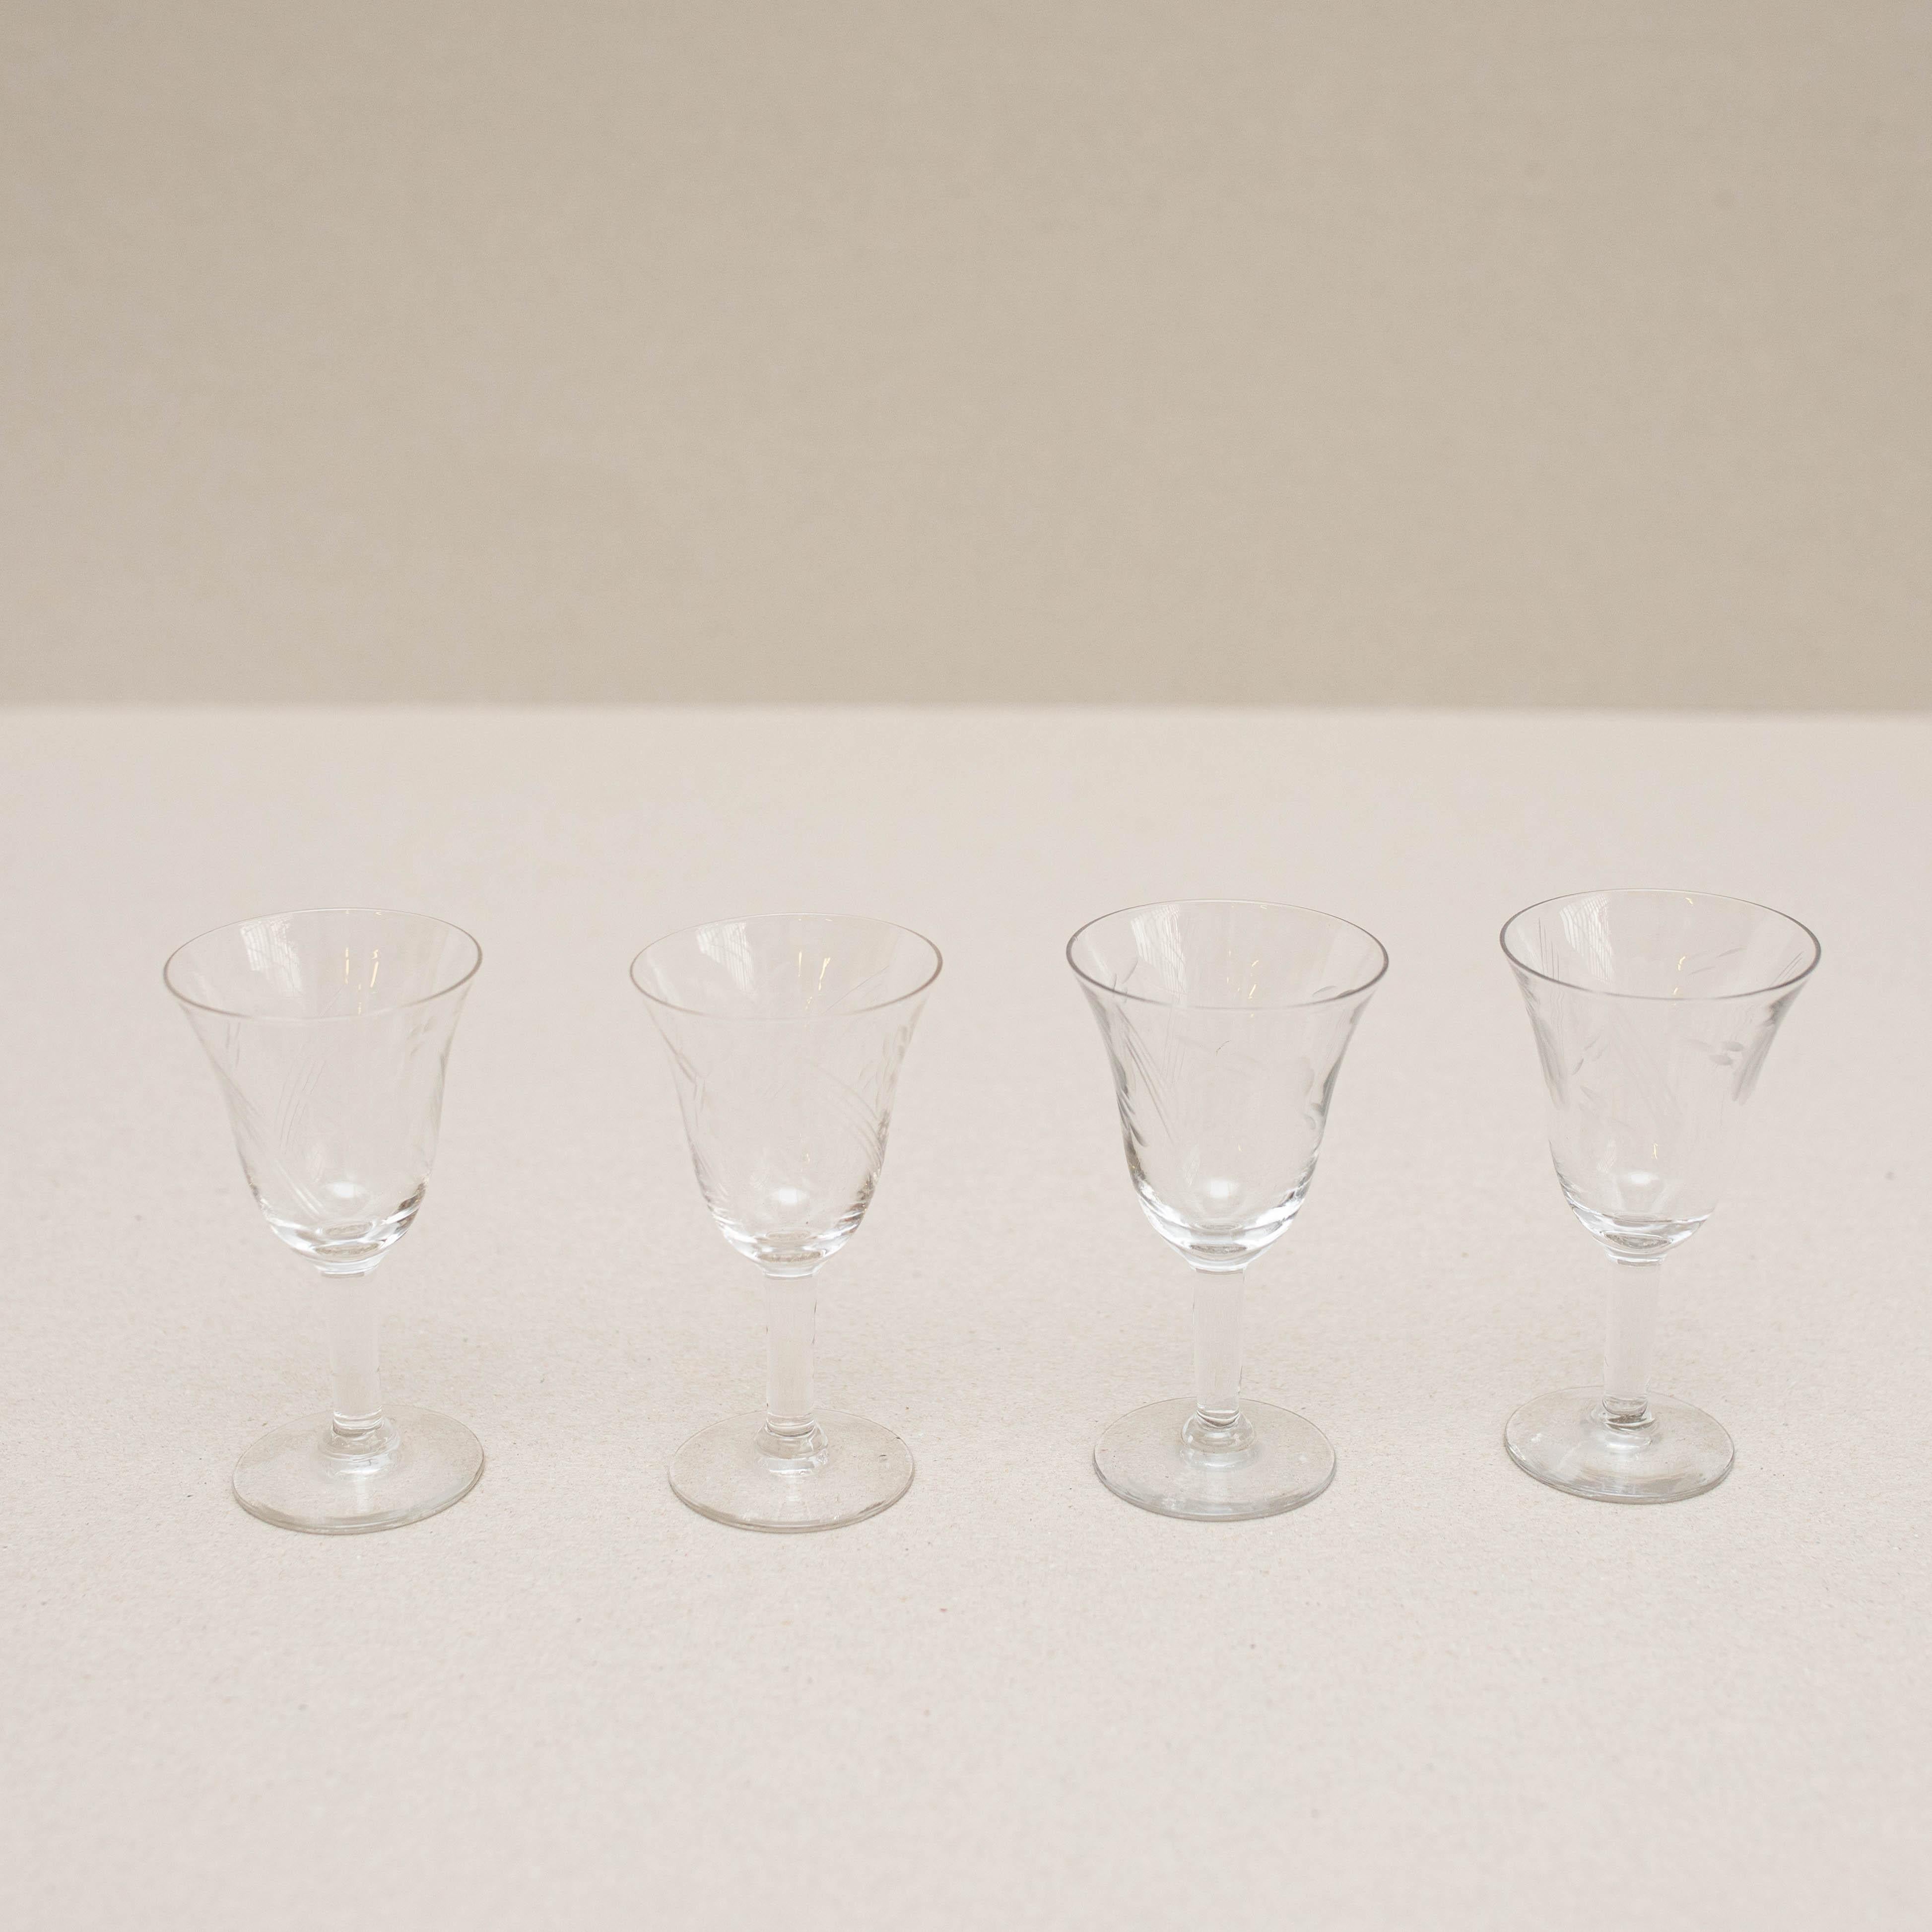 Satz von 4 antiken Weinbechern aus Glas.

Hergestellt von einem unbekannten Hersteller in Spanien, um 1940.

Originaler Zustand mit geringen alters- und gebrauchsbedingten Abnutzungserscheinungen, der eine schöne Patina